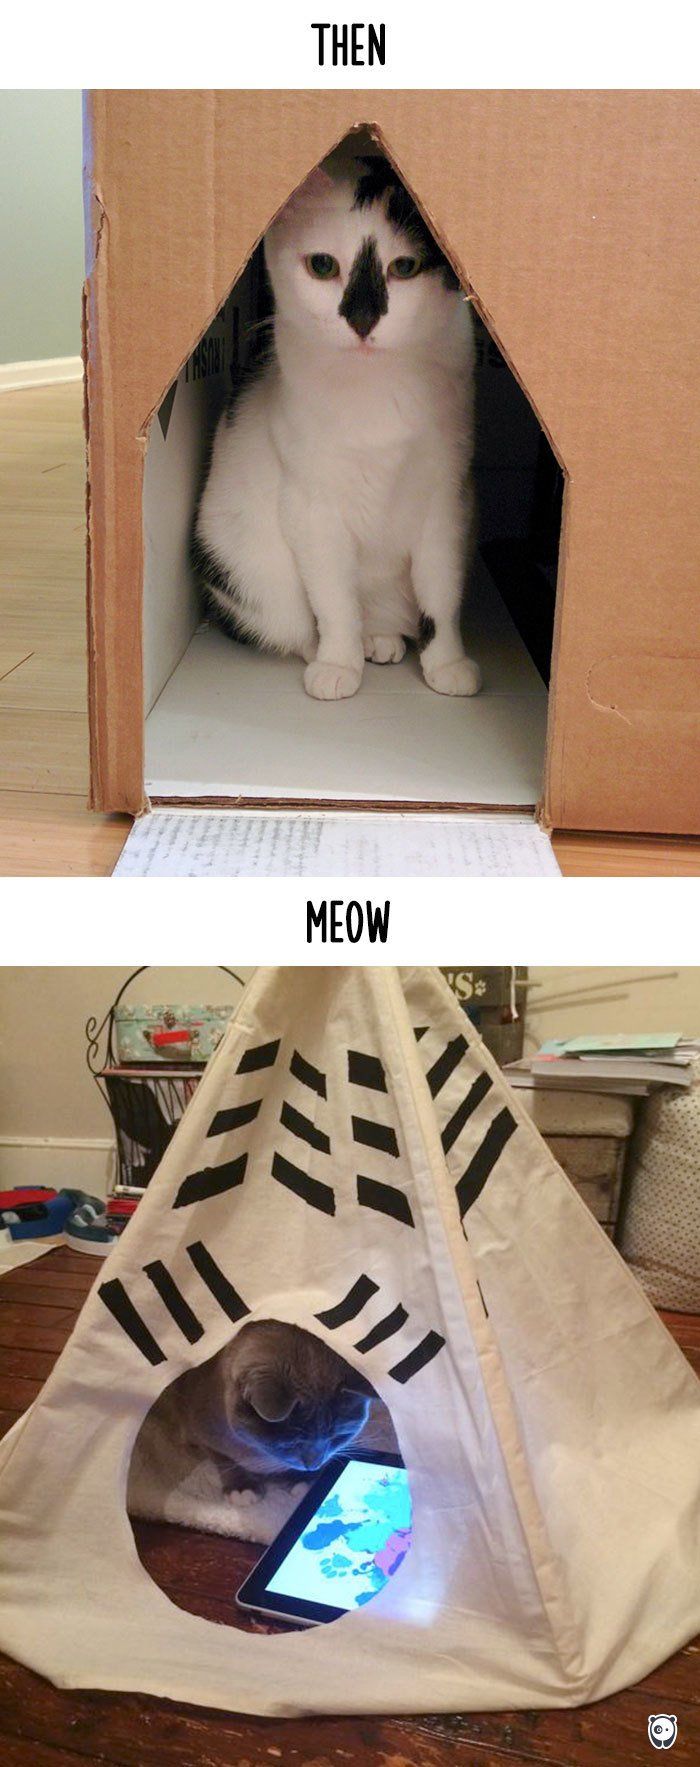 Як змінилось життя котів з появою гаджетів - фото 3